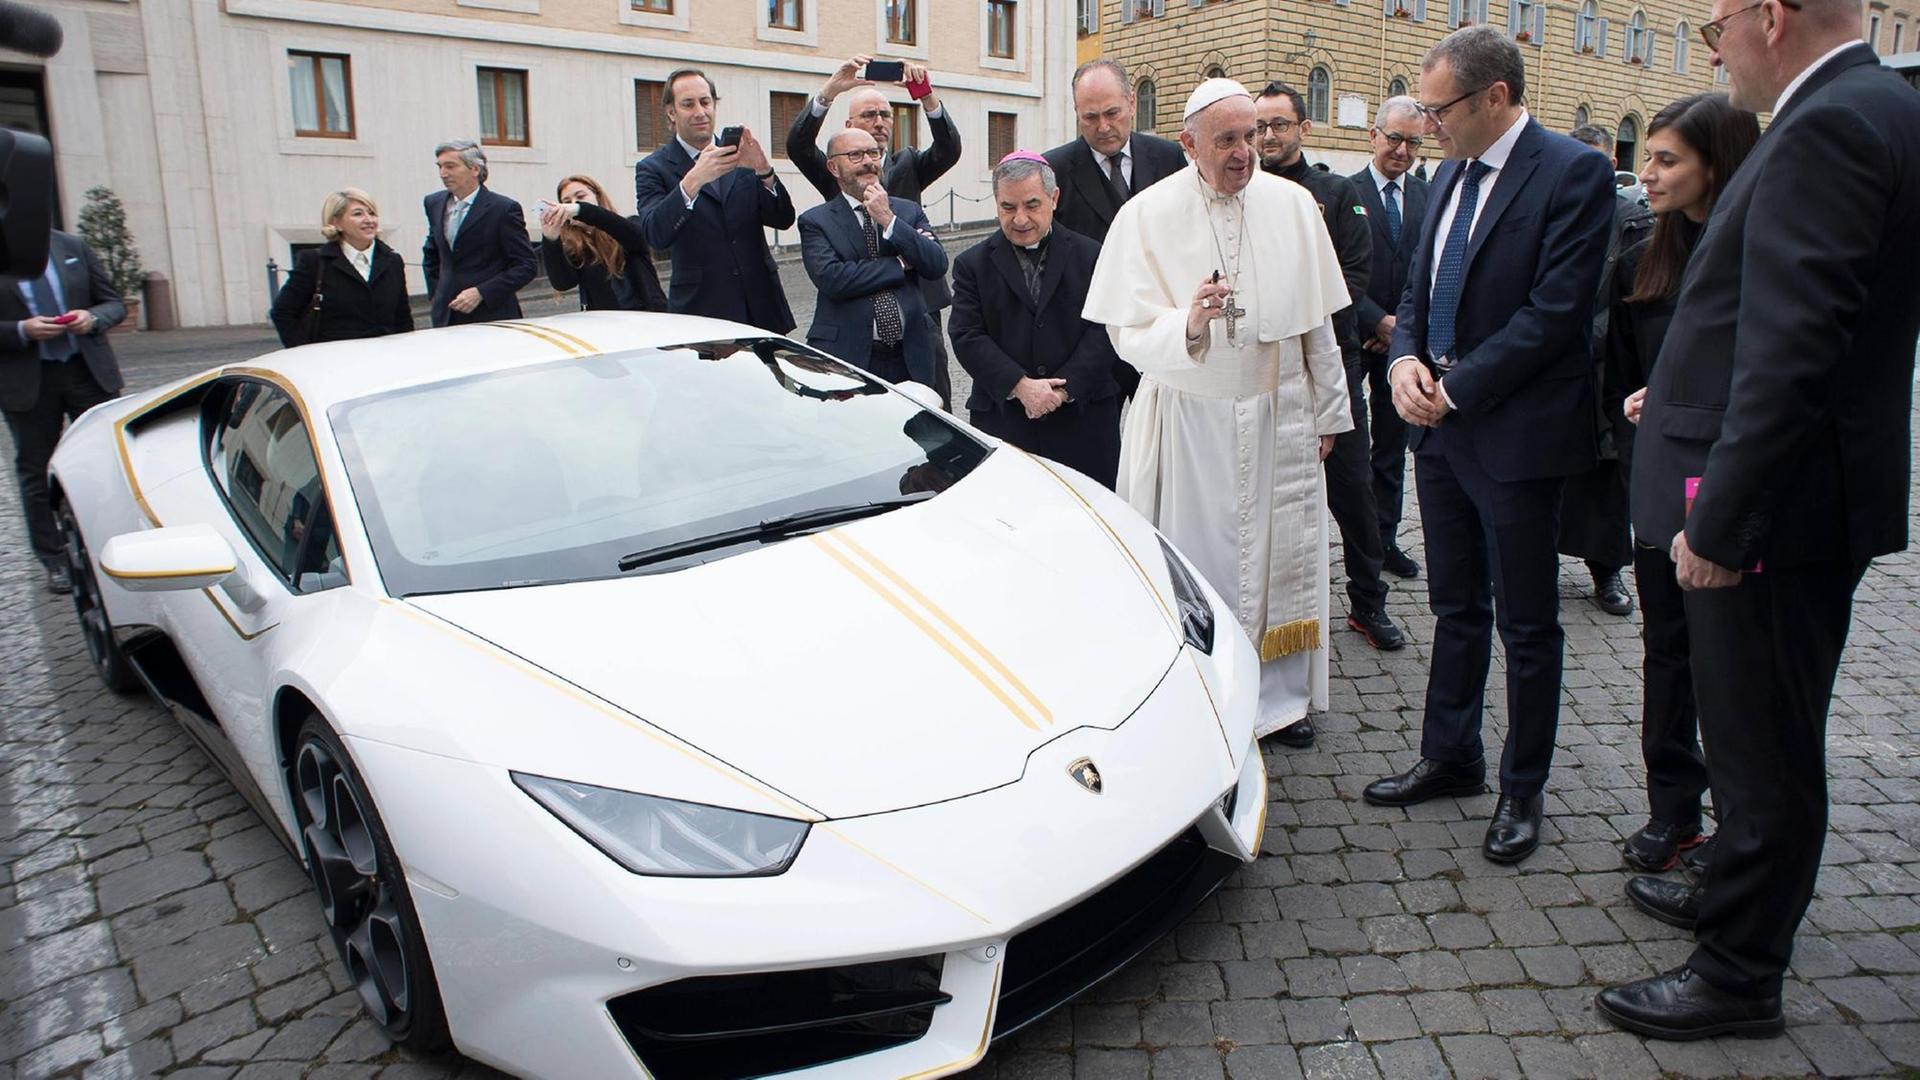 Papst Franziskus spricht mit dem CEO von Lamborghini, Stefano Domenicali, neben einem weißen Sportwagen, einem Geschenk des Unternehmens an den Potifex